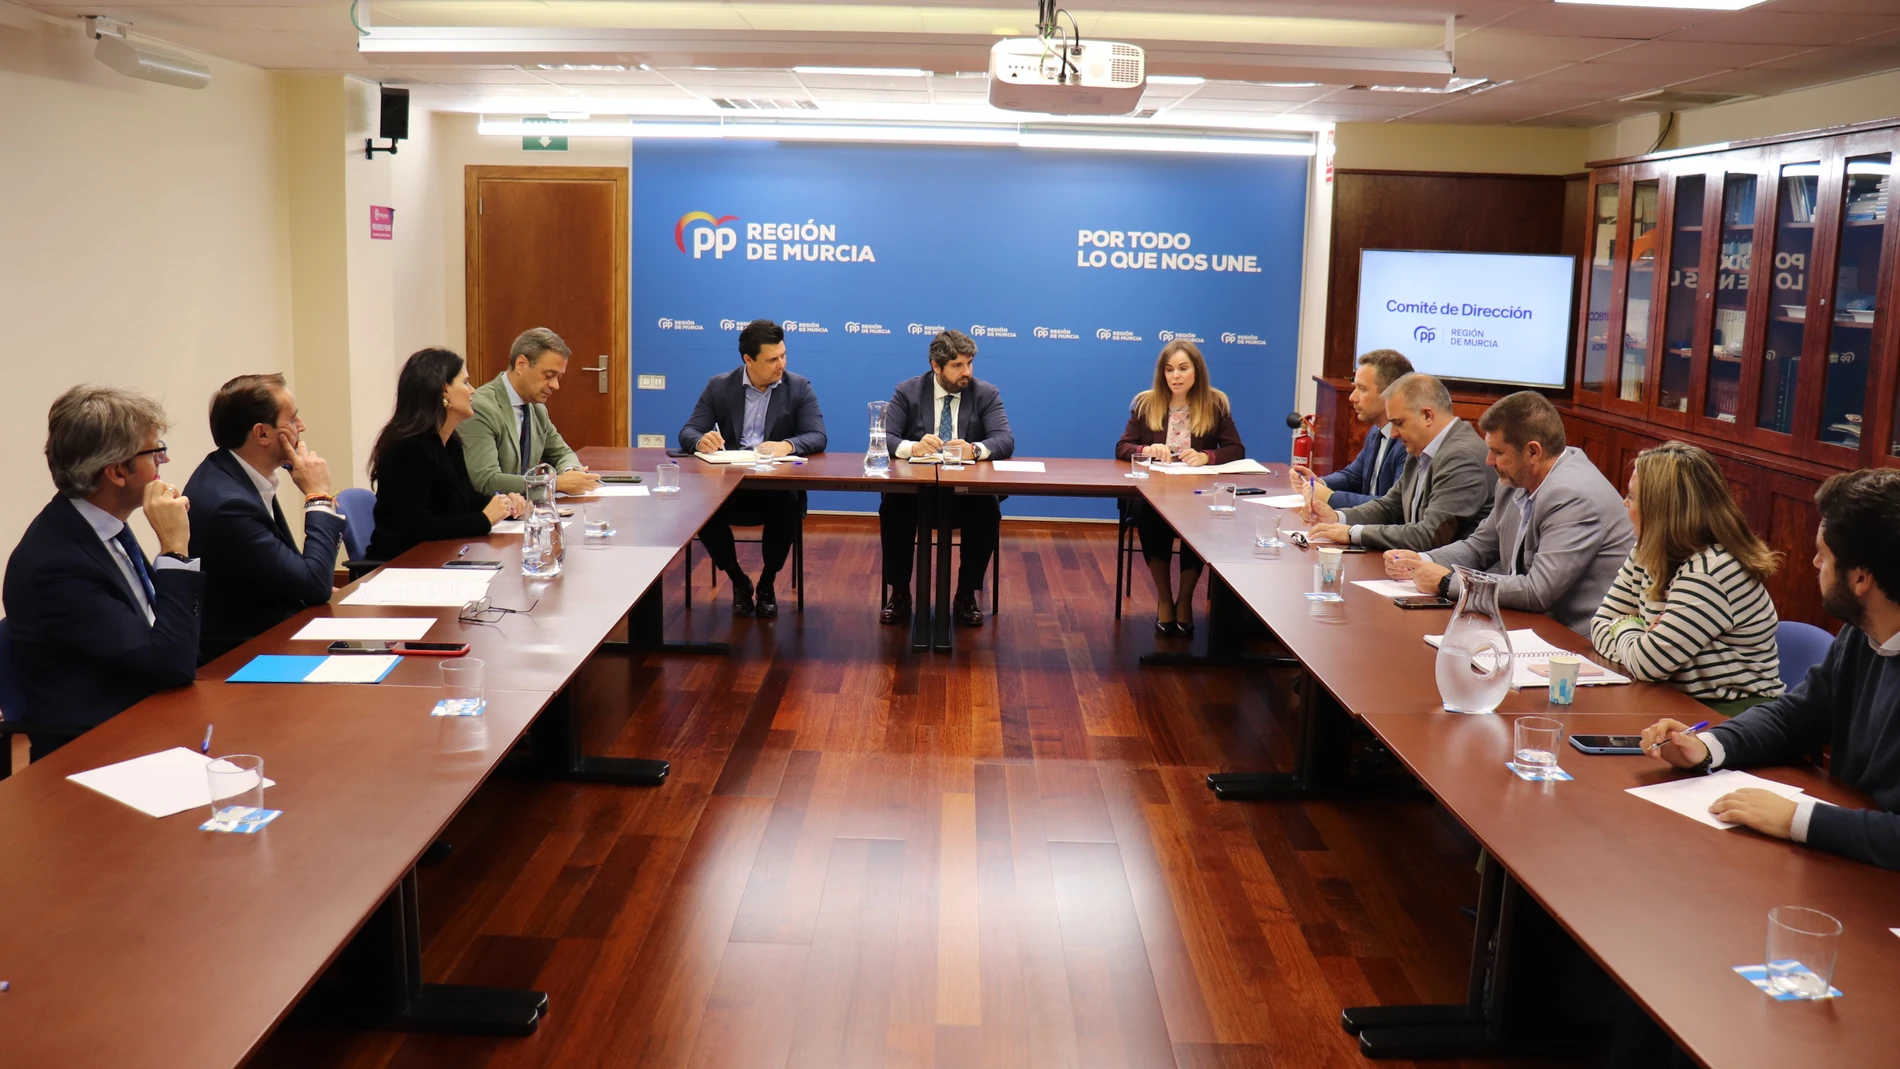 El comité de dirección del PPRM, presidido por Fernando López Miras